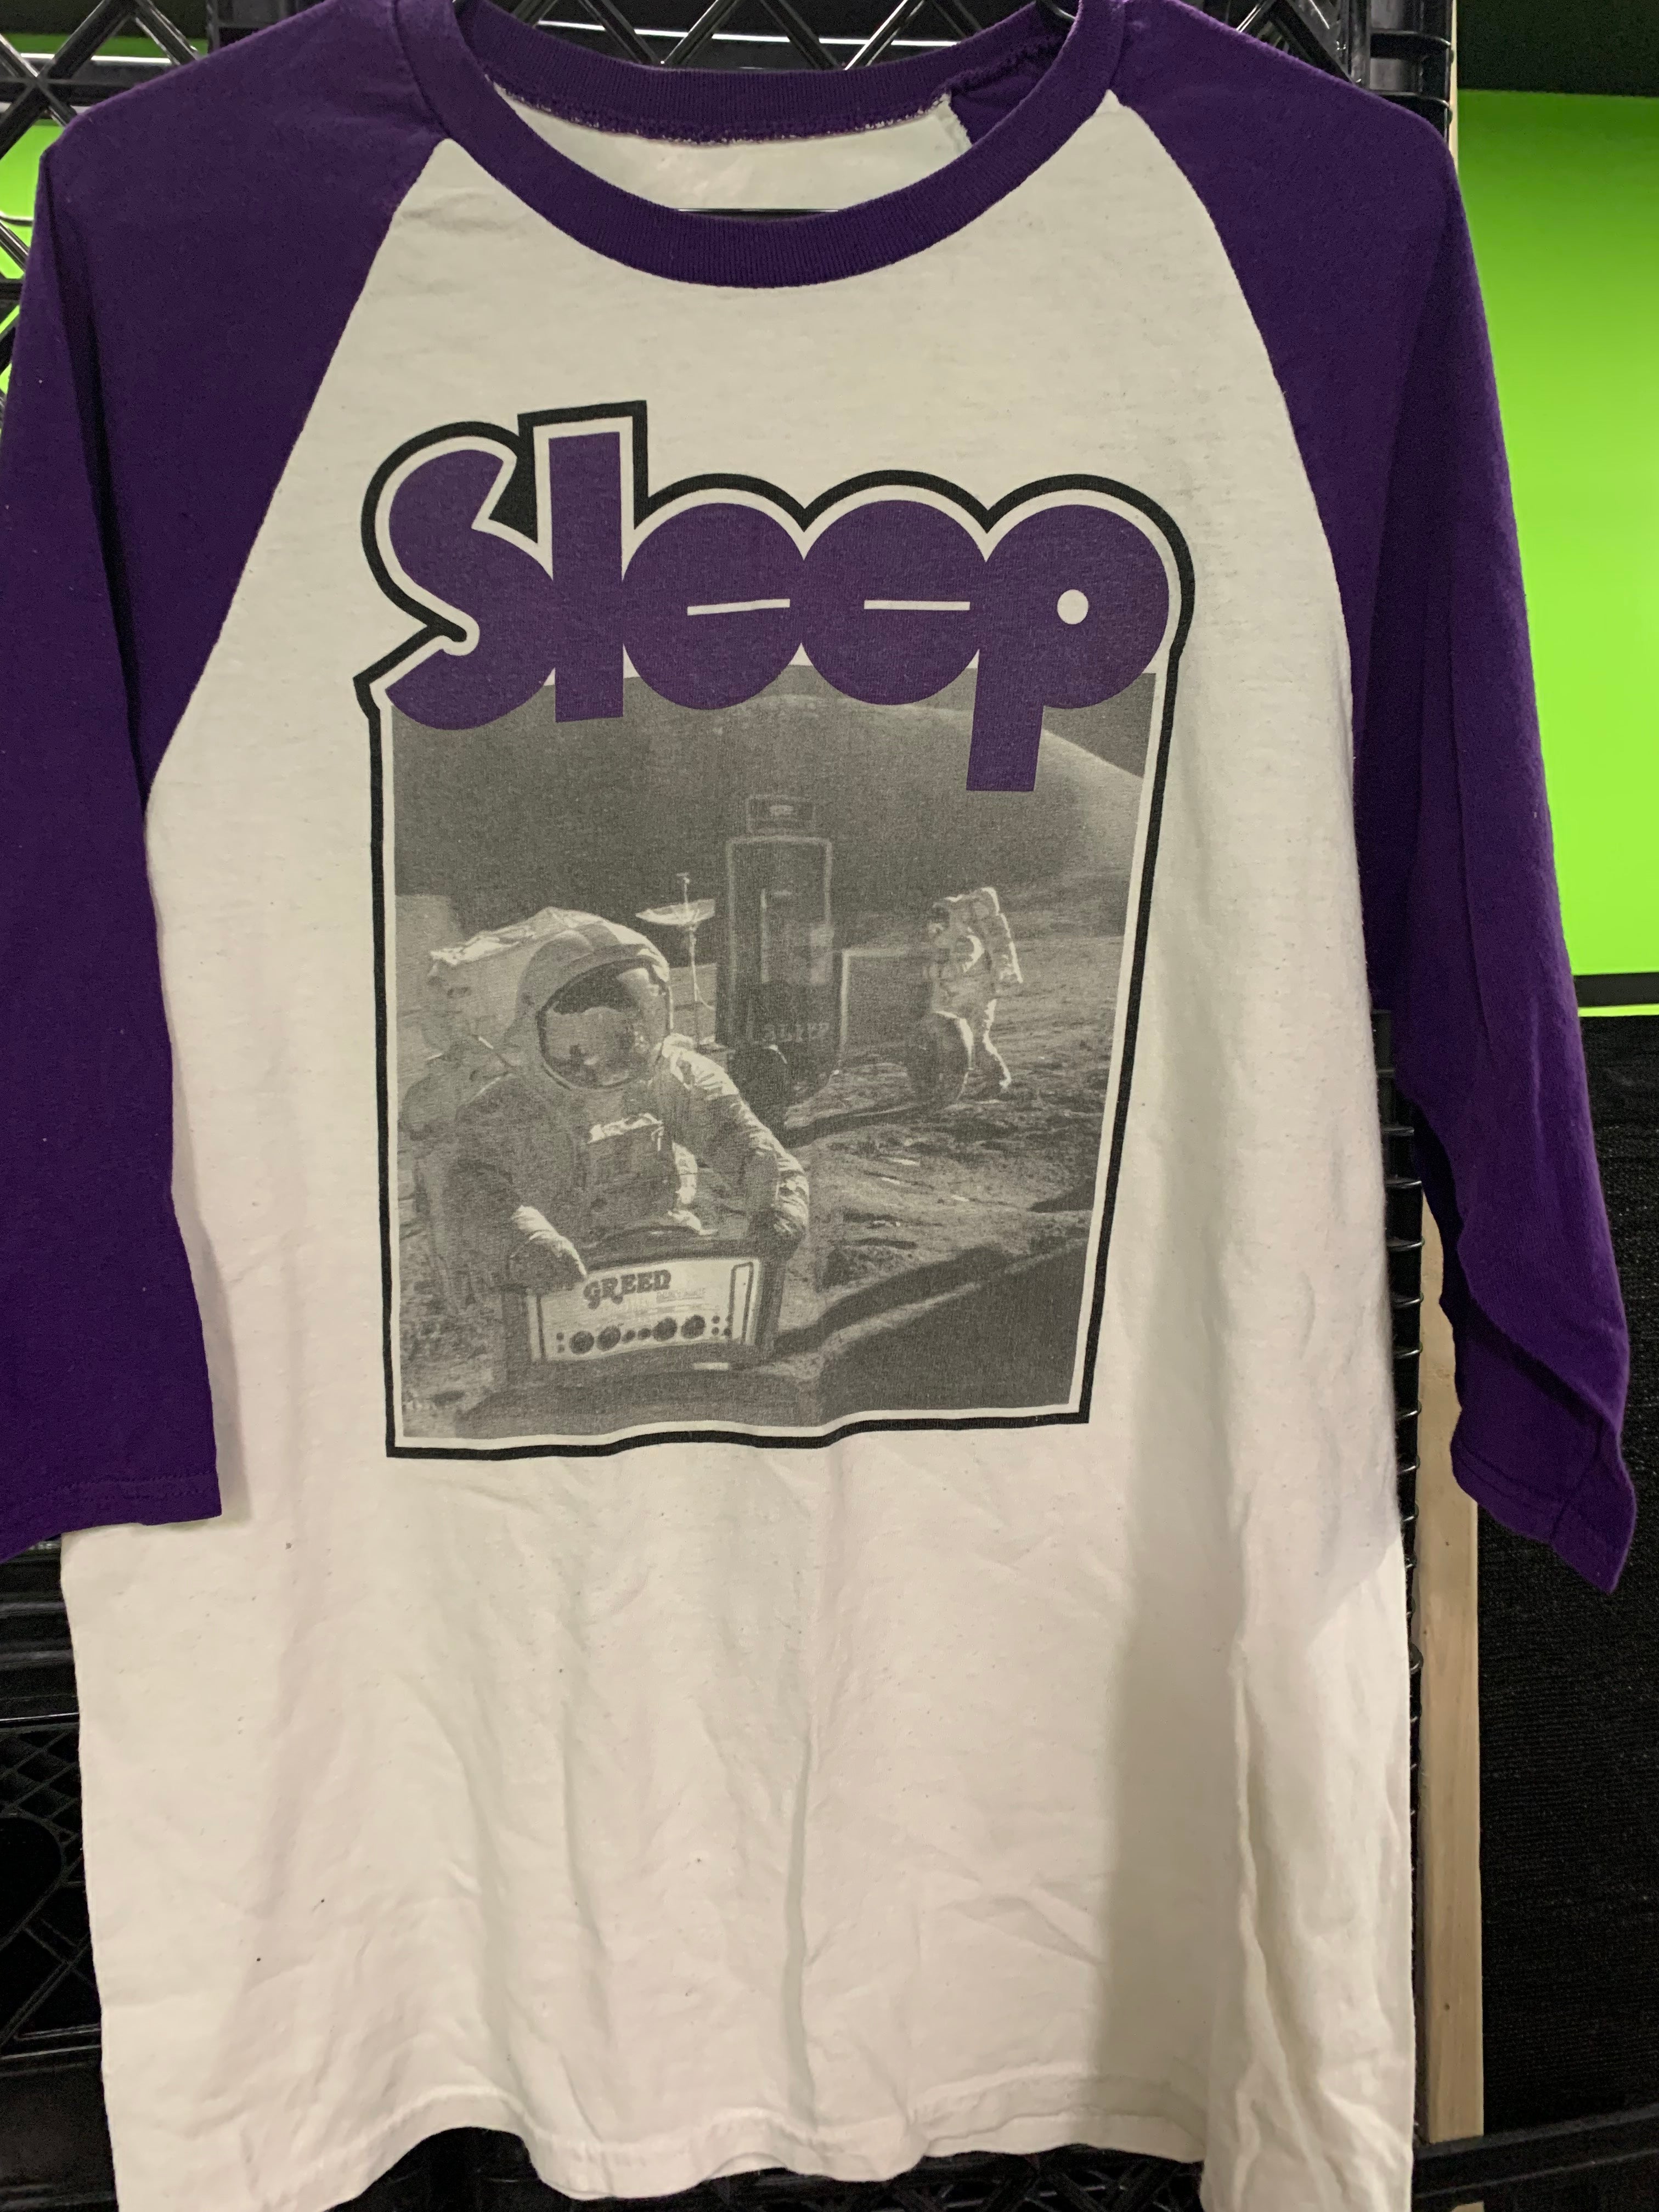 Sleep 1994 Tour Reprint Baseball Tee, White / Purple, M